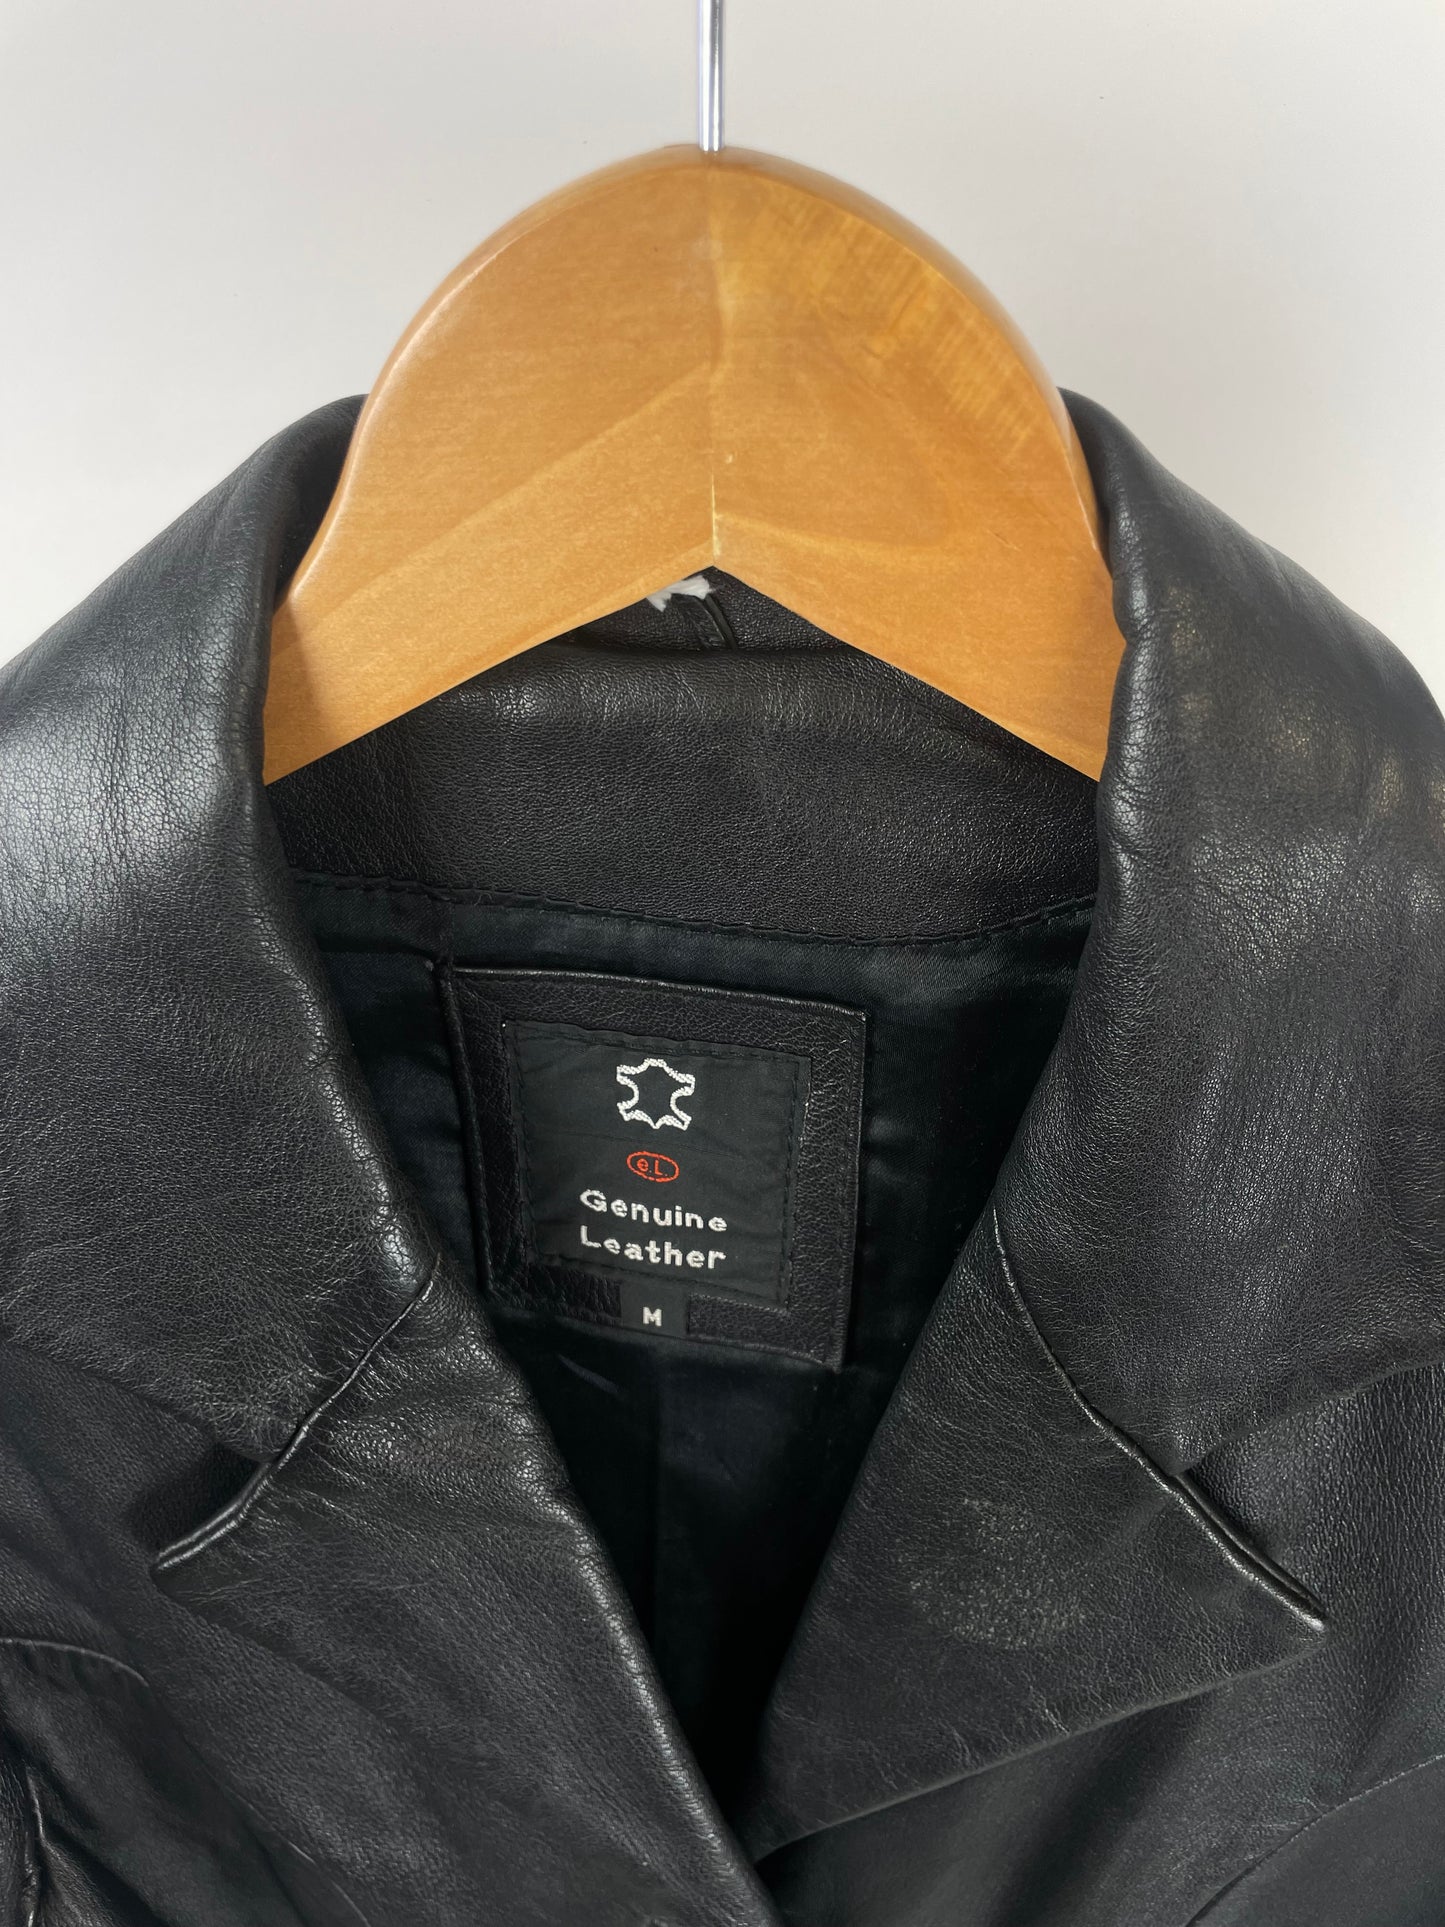 Vintage 90s Long Black Leather Jacket